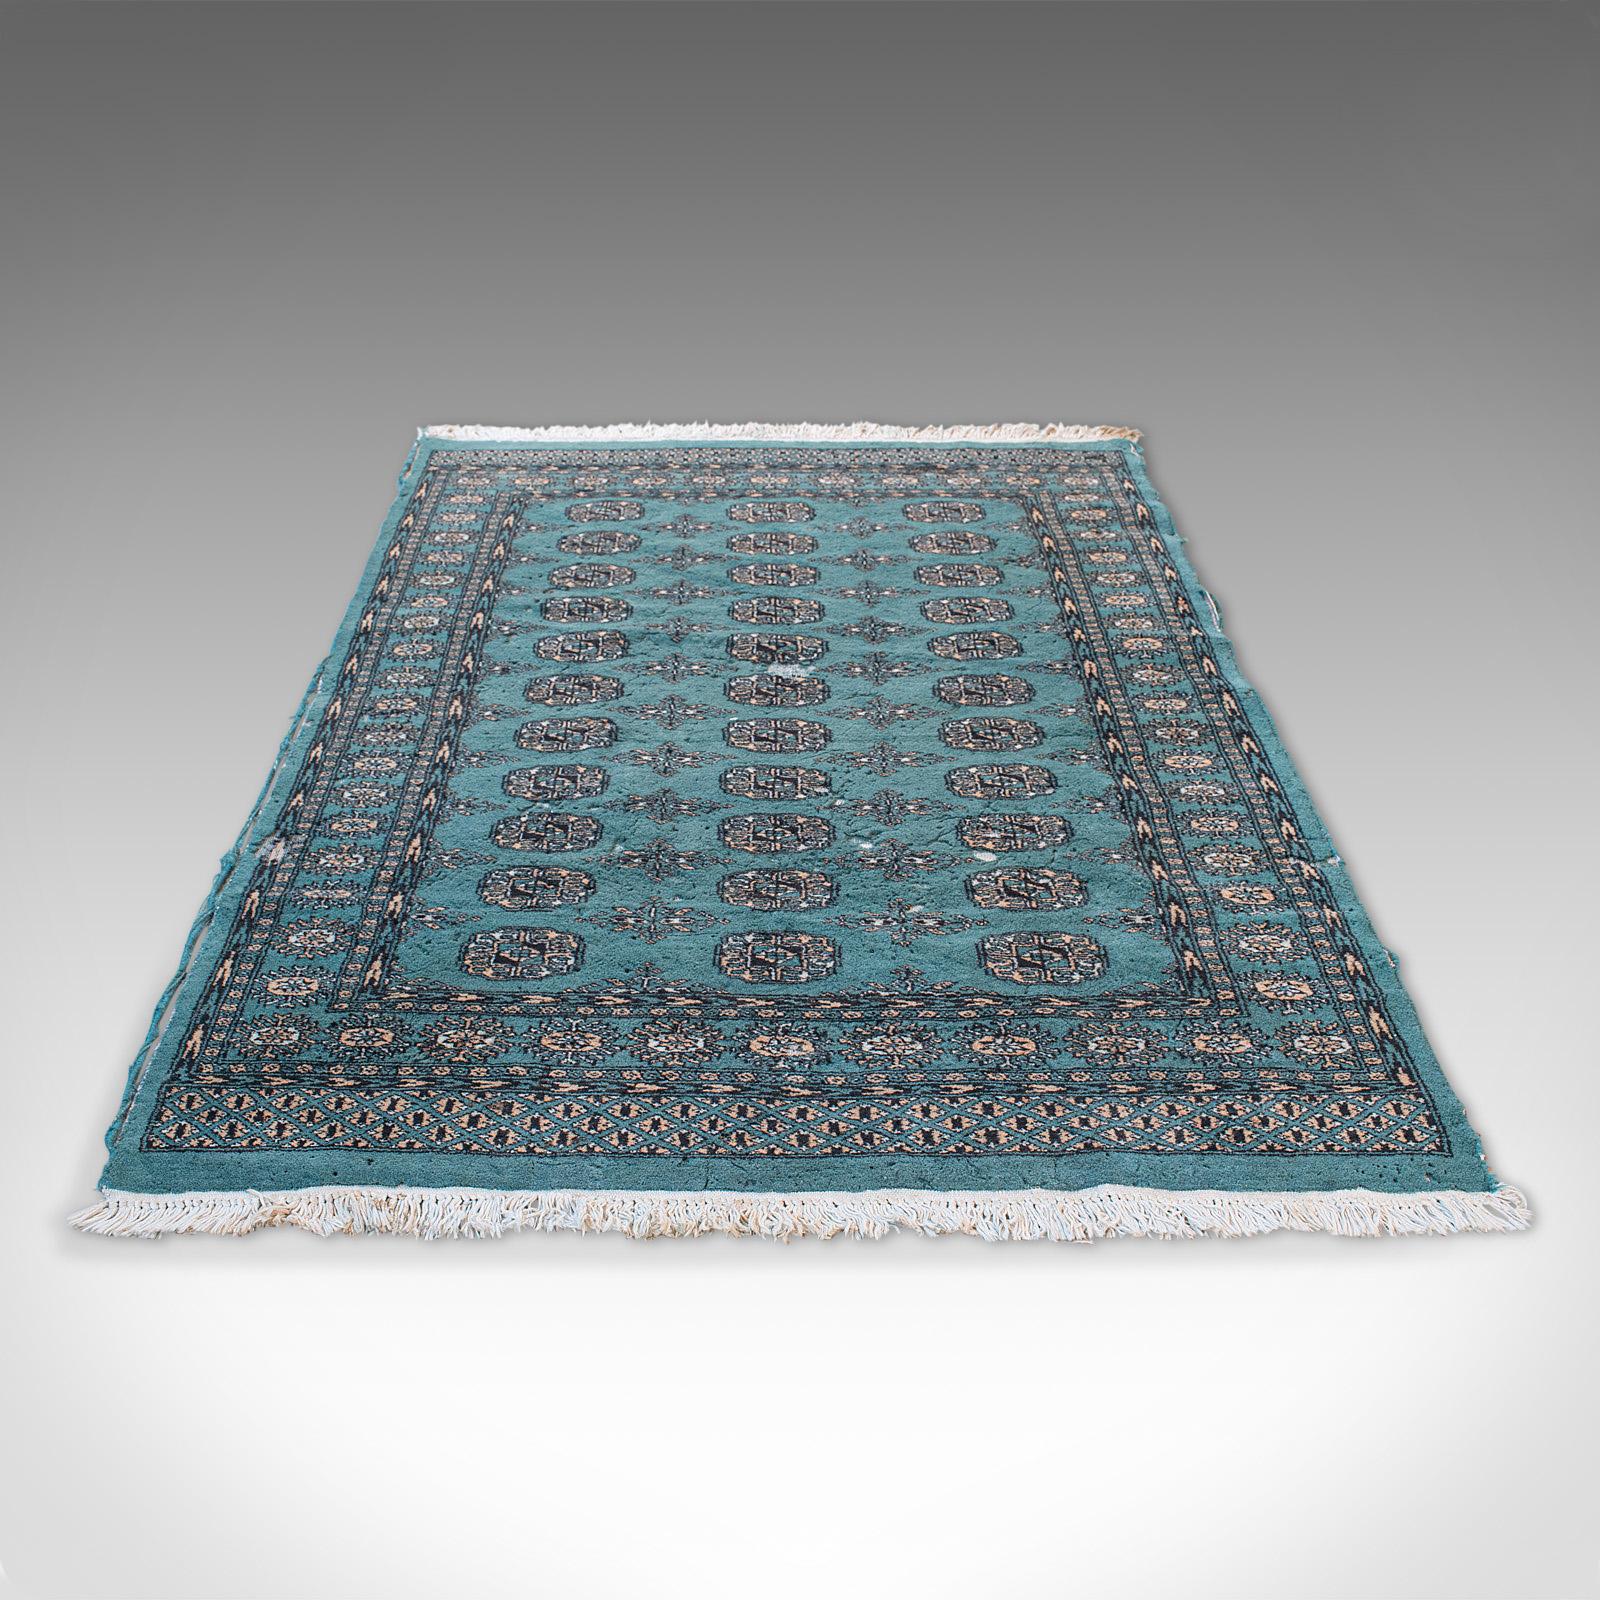 Dies ist ein dekorativer Vintage-Teppich. Ein Bokhara-Teppich aus Wolle aus dem Nahen Osten, Mitte des 20. Jahrhunderts, um 1950.

Hervorragende Farbe zieht das Auge auf diesen schneidigen Teppich von Dozar Größe - 201cm (79.25